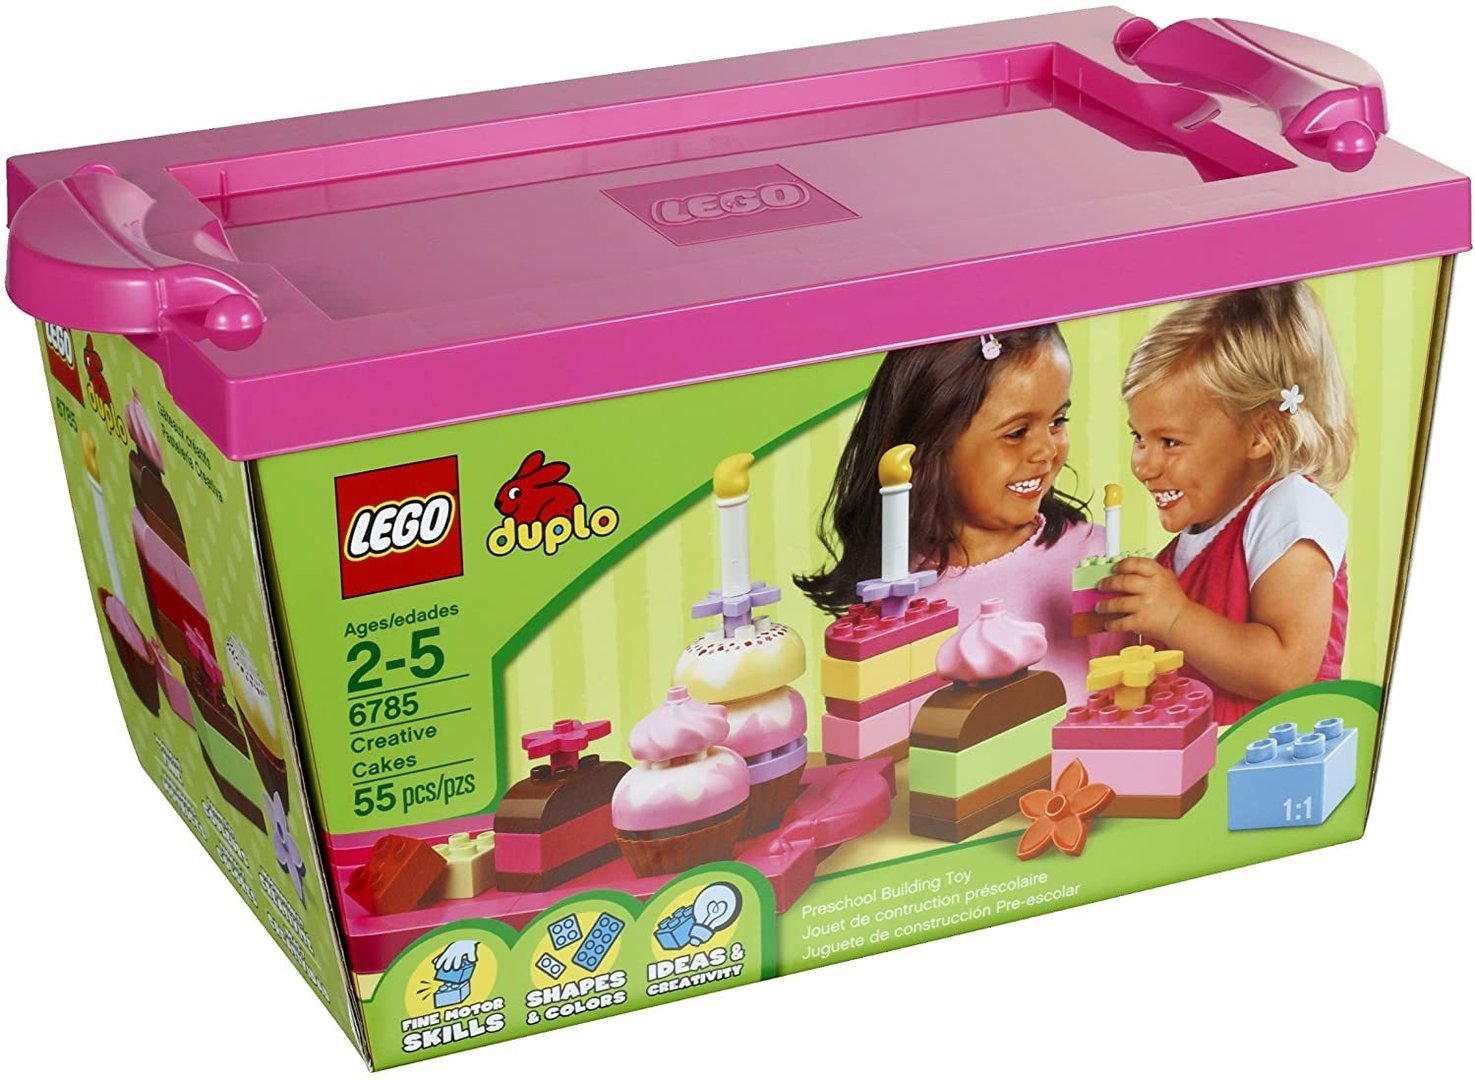 LEGO® duplo® Creativ Cakes Tortenstücke mit Deko - LEGO duplo 6785